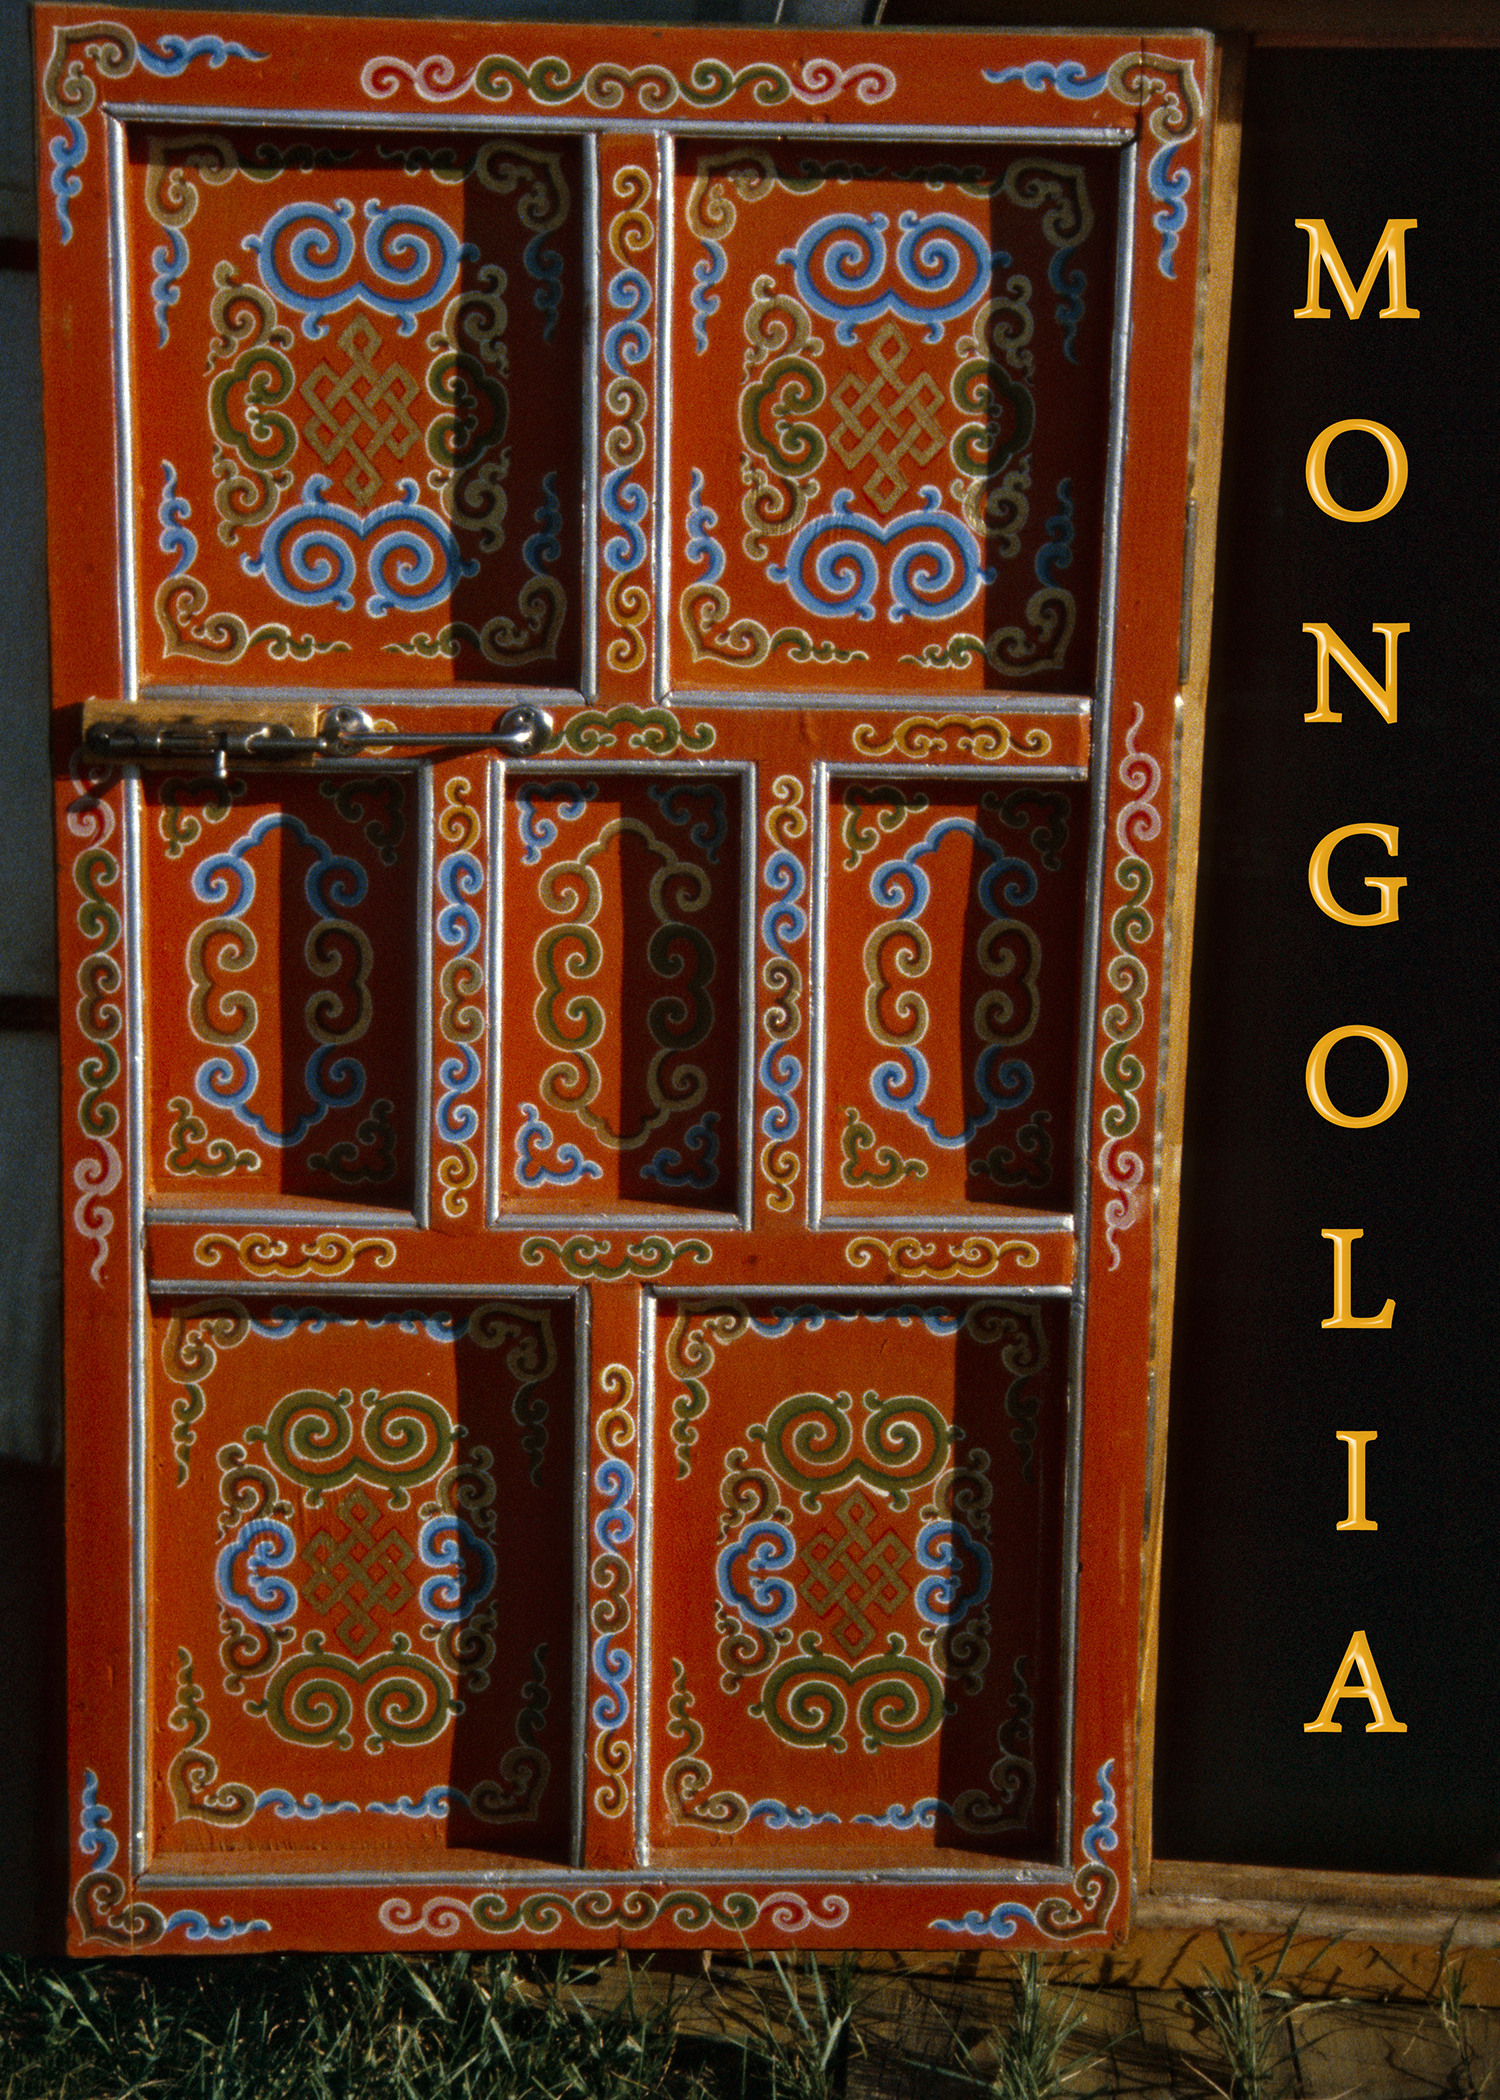 Mongolia DVD Case Cover